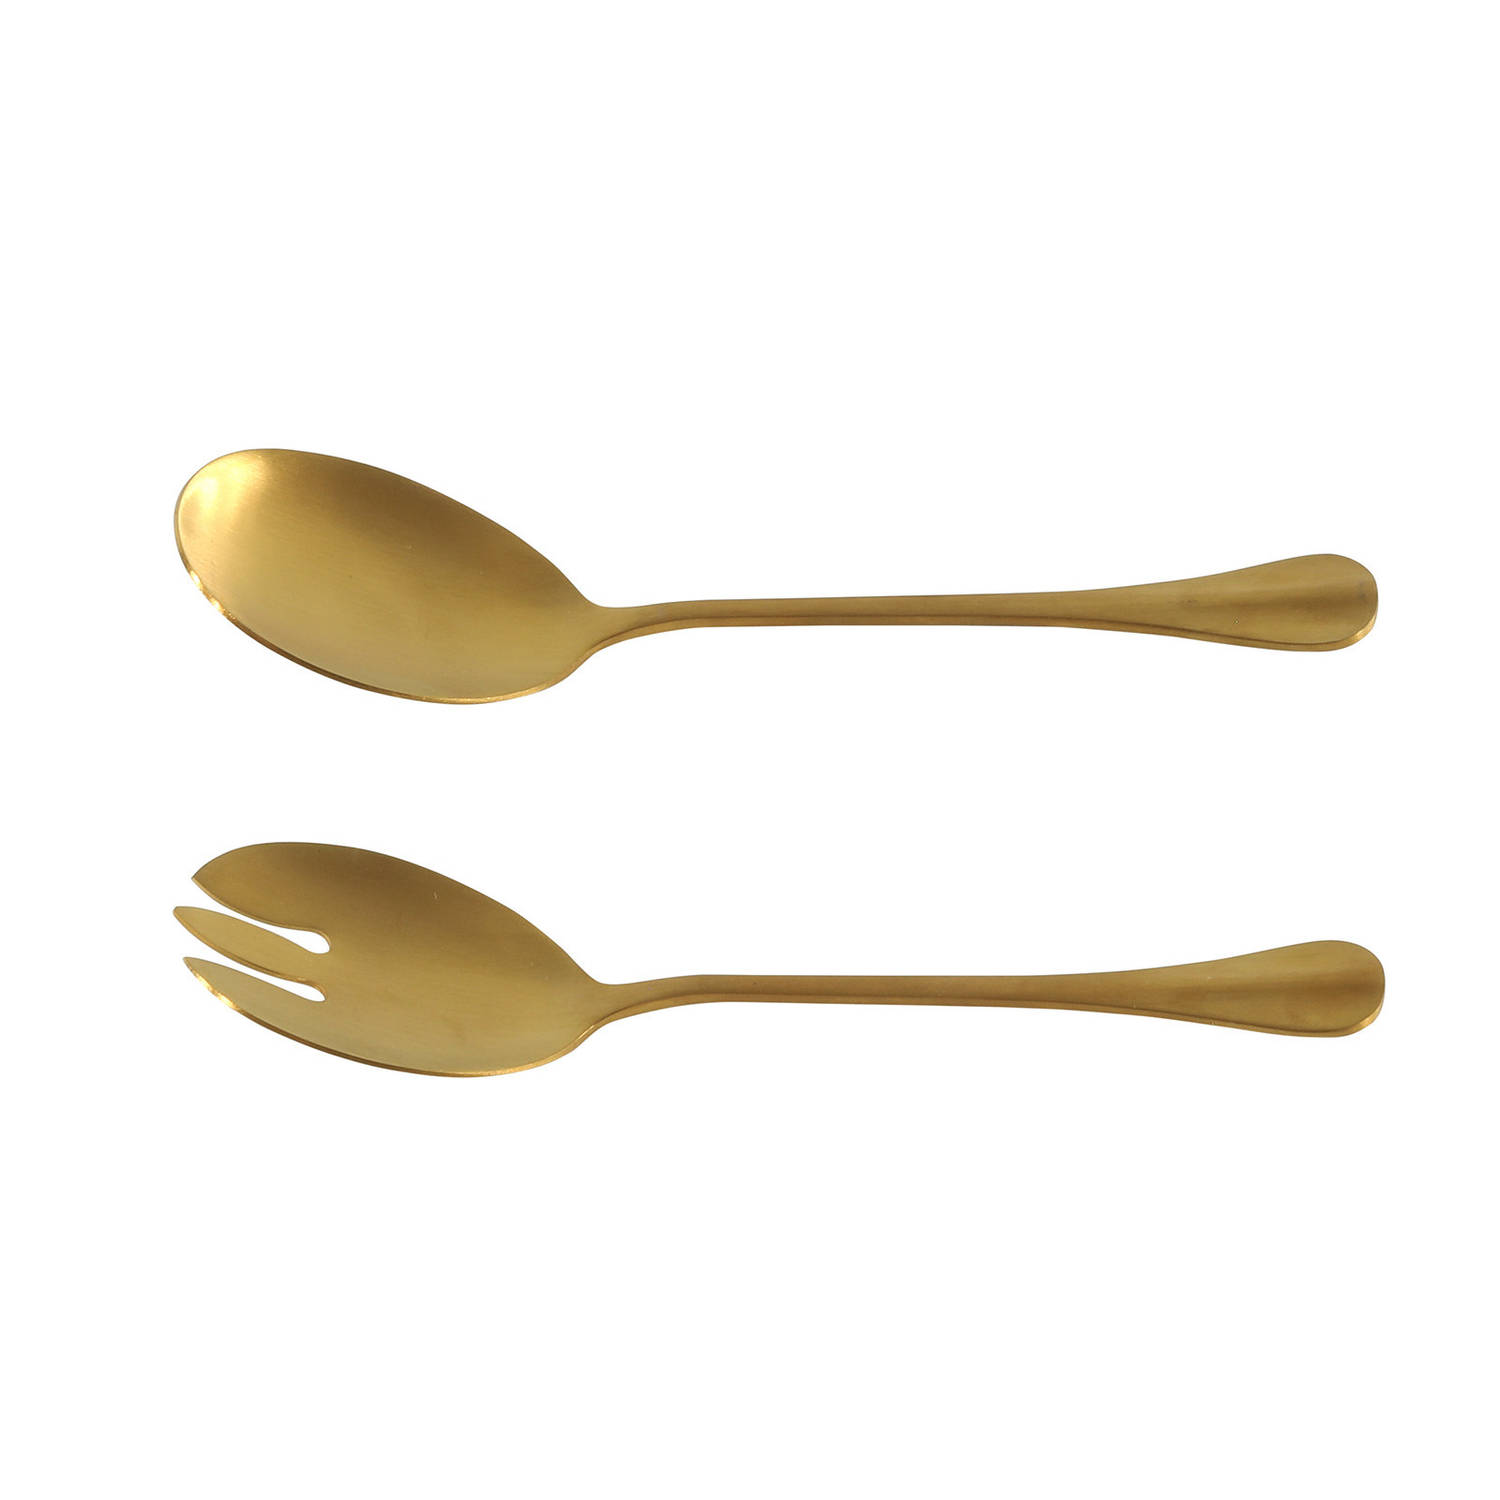 RVS sla-salade vork en lepel goud 21,5 cm Slabestek